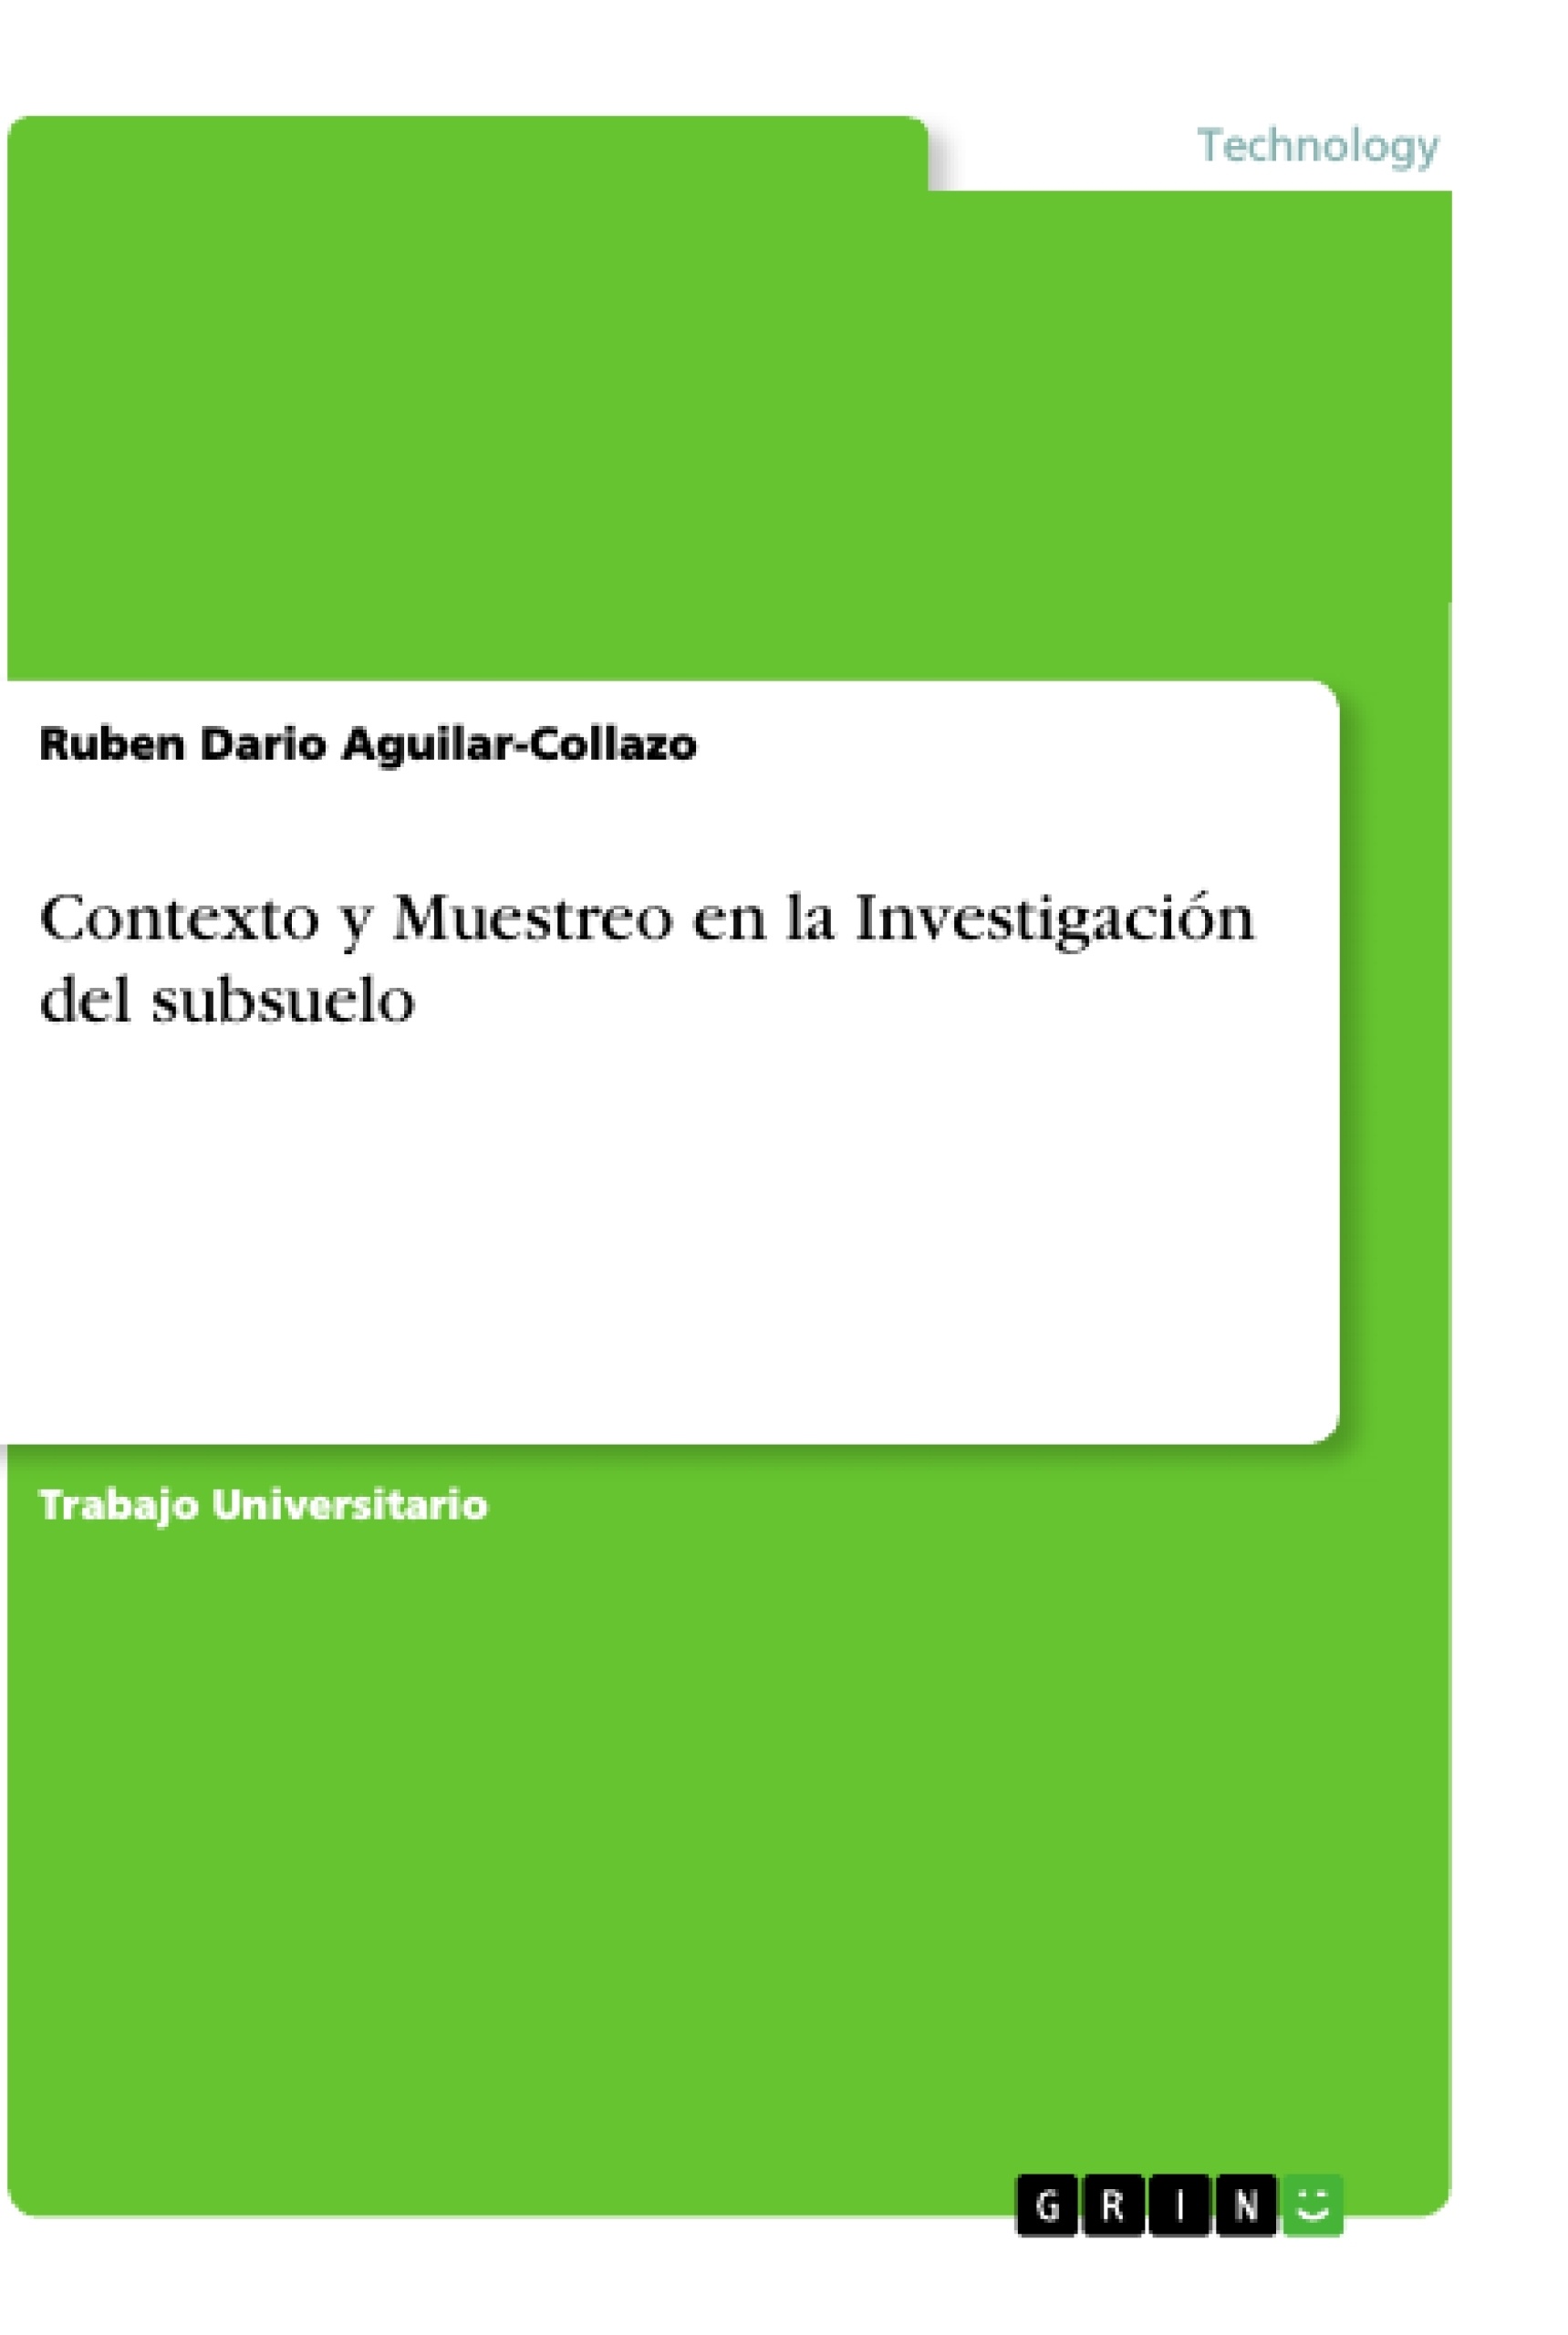 Titre: Contexto y Muestreo en la Investigación del subsuelo